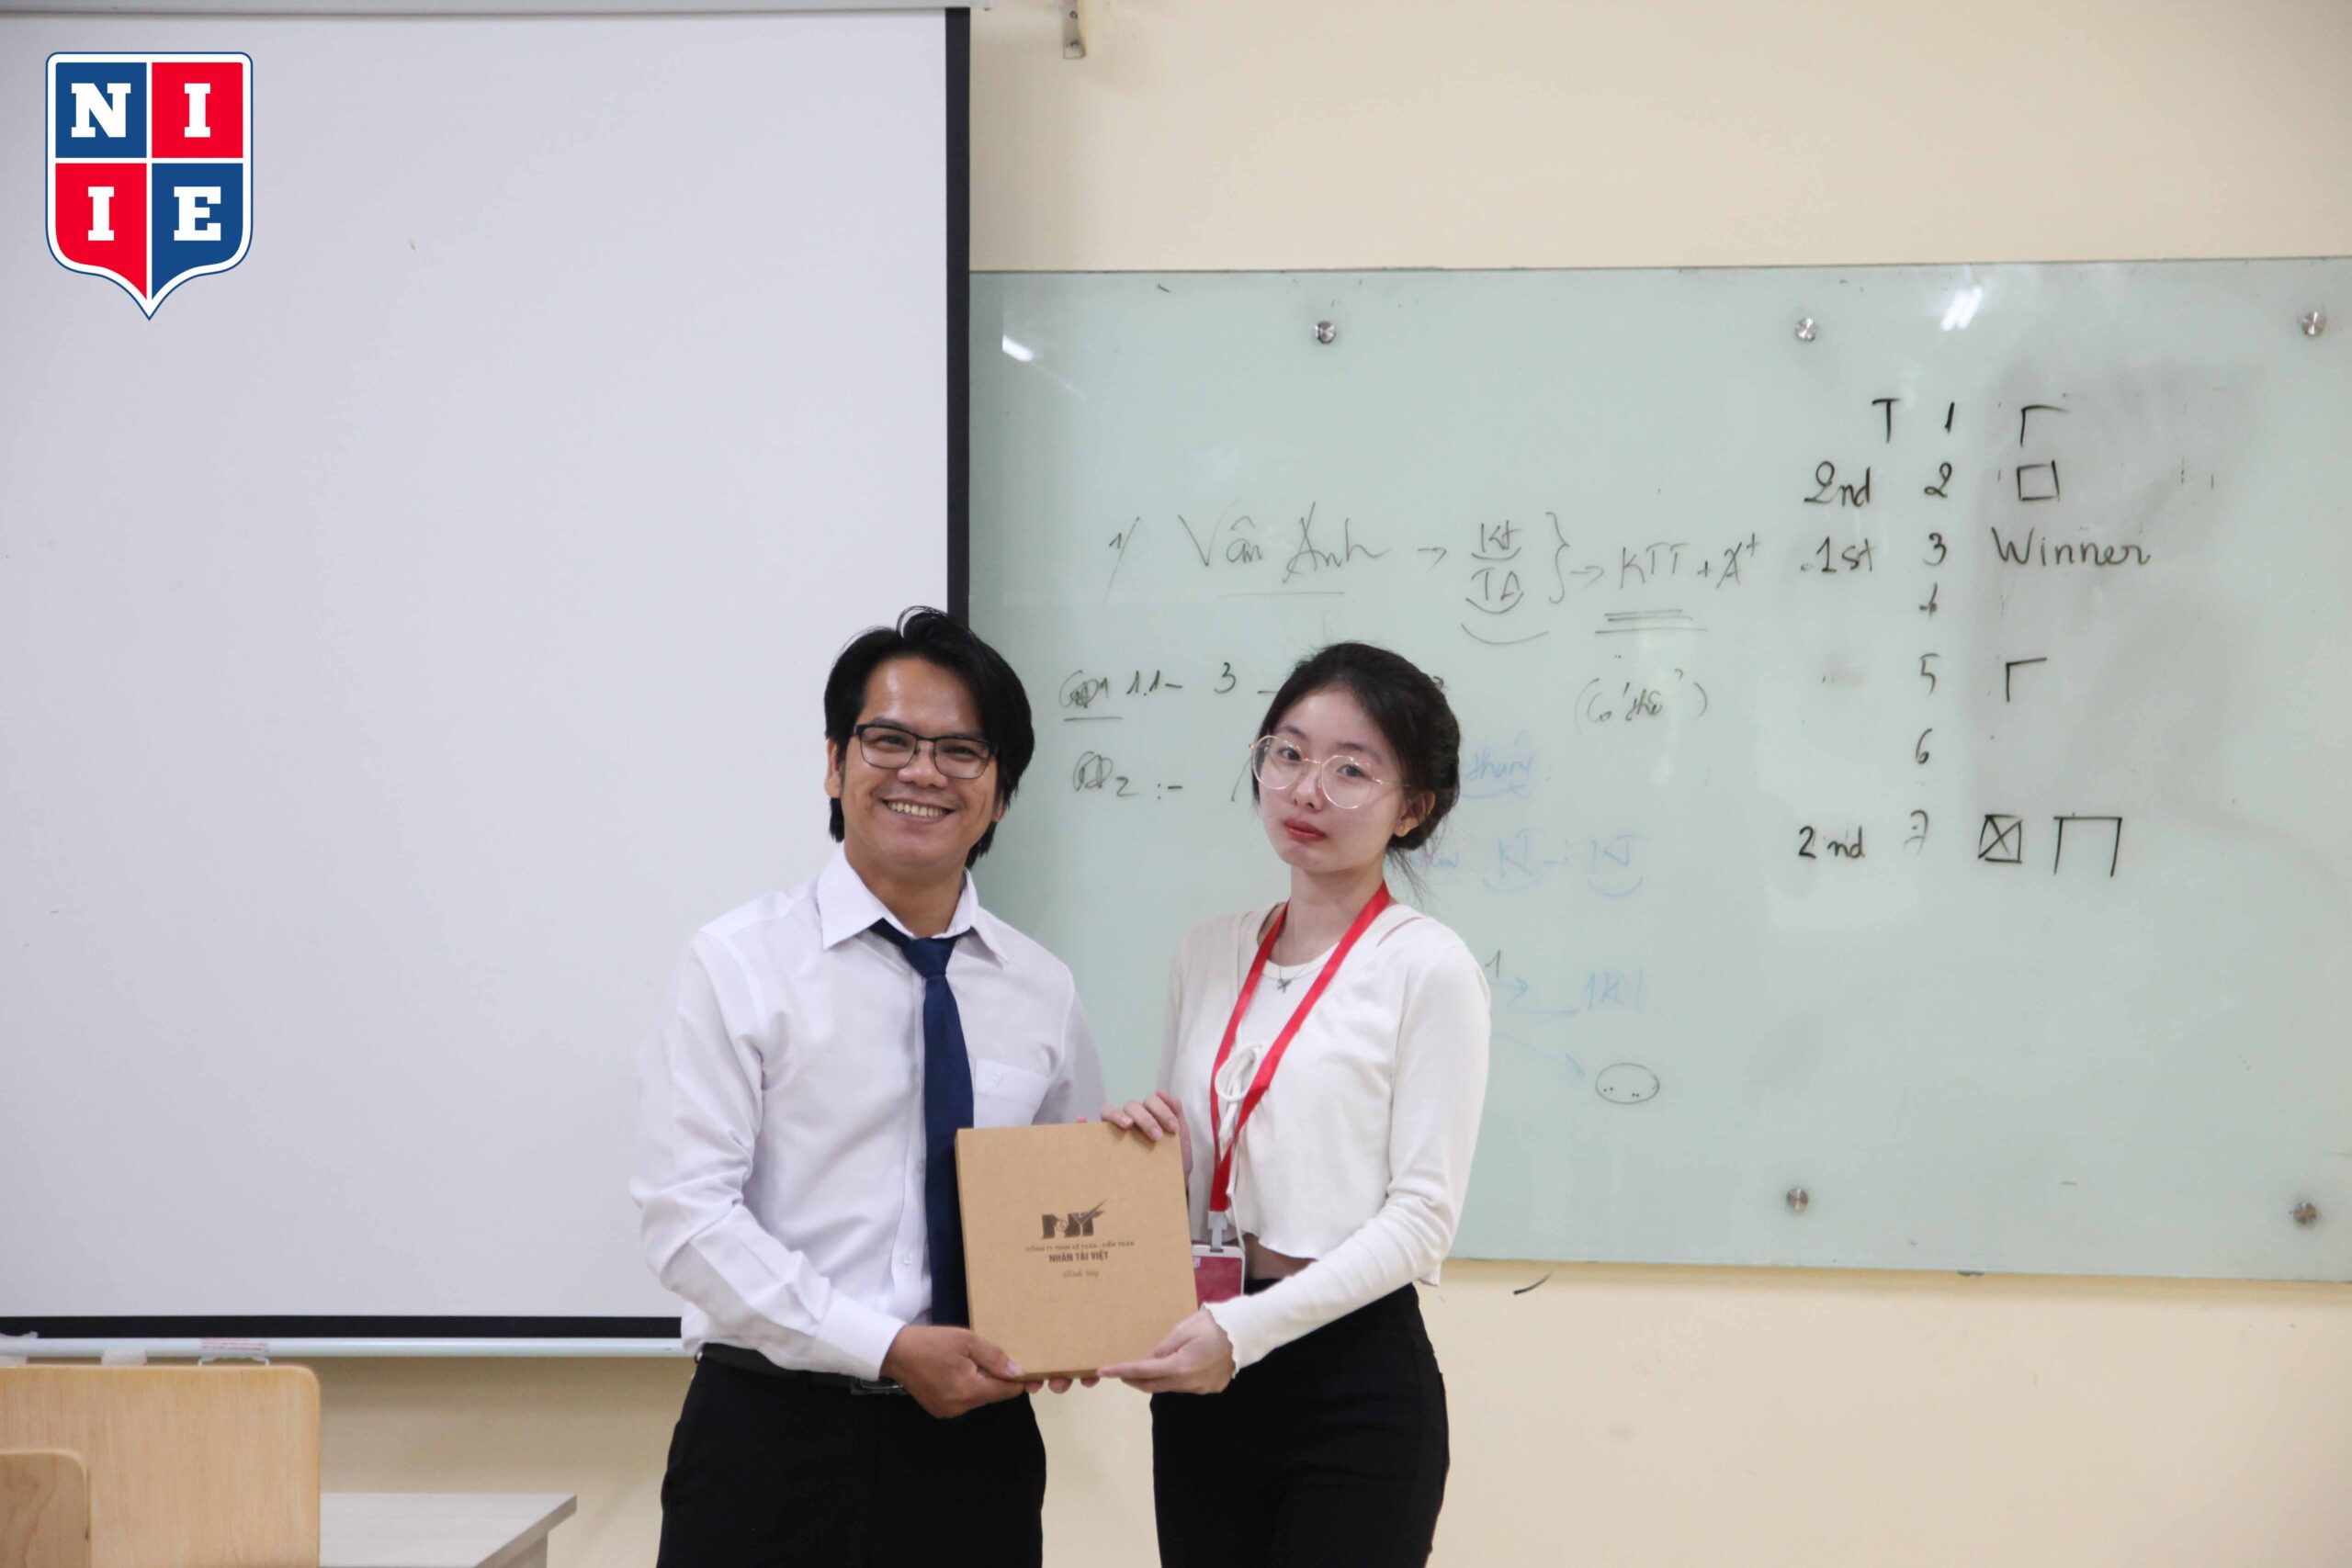 Không chỉ là những chia sẻ, sinh viên tham dự chương trình còn nhận được quà tặng từ khách mời, ThS. Trần Ngọc Khánh